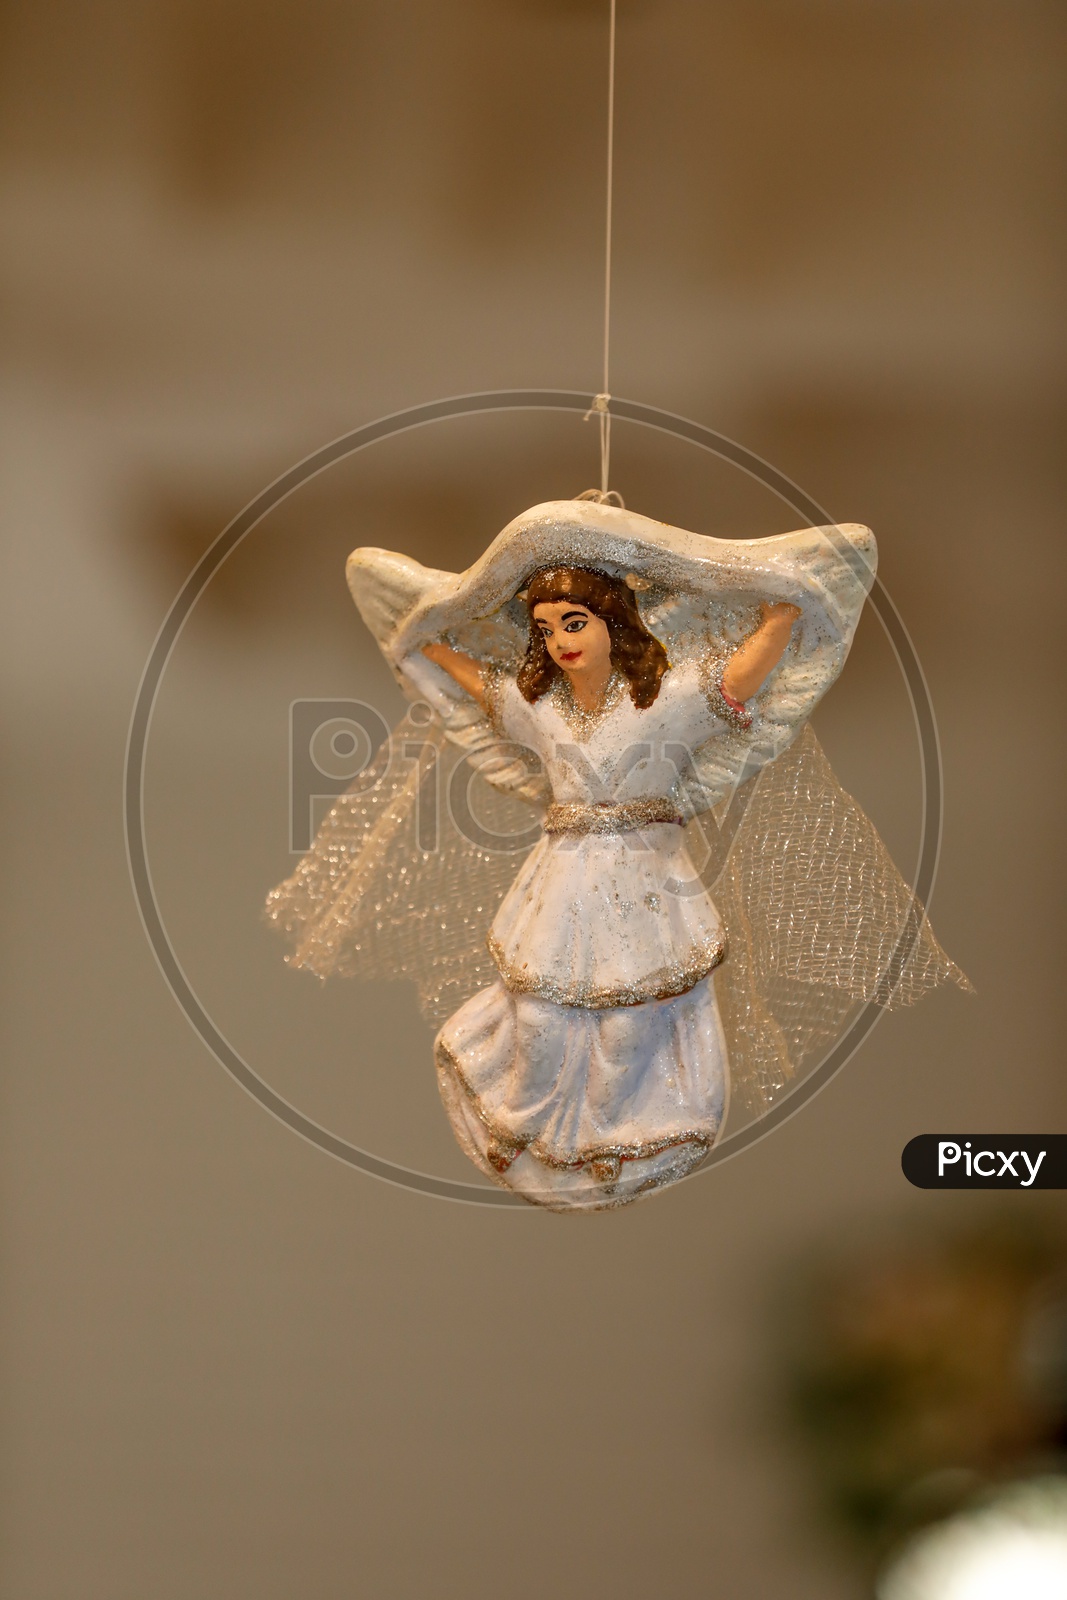 An Angel Doll Closeup Shot